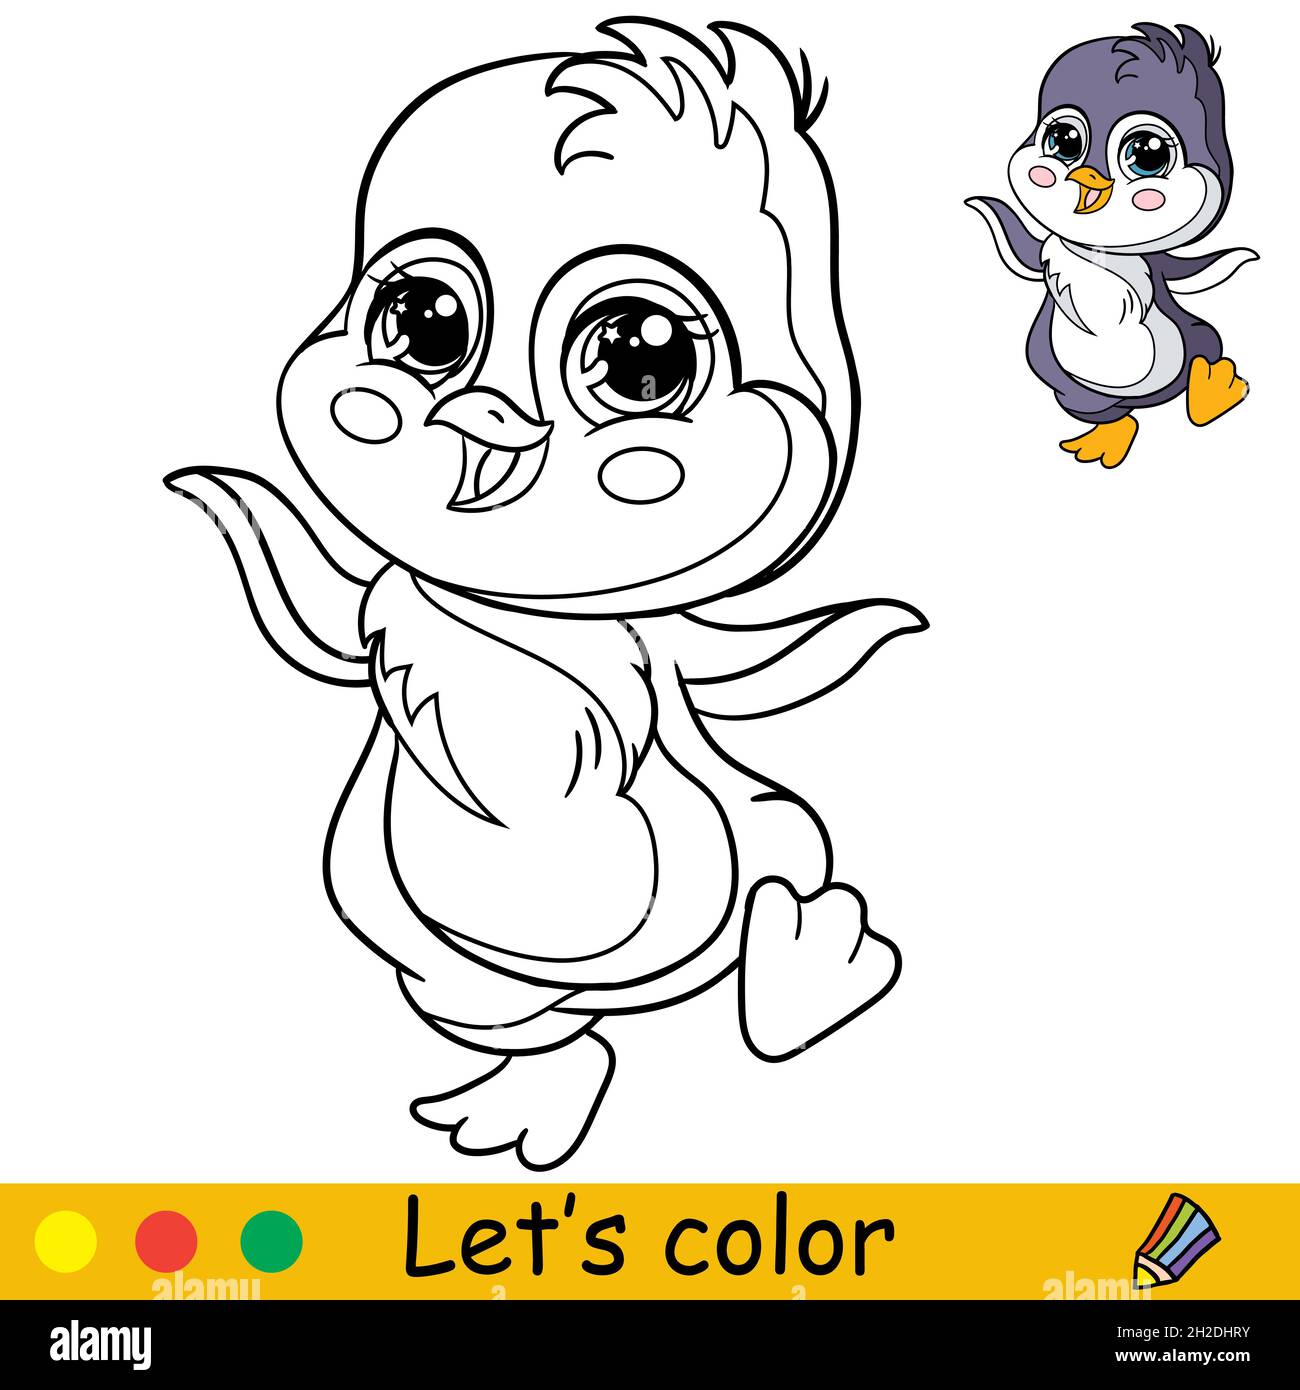 Carino e felice pinguino ballante ragazzo. Colorare la pagina del libro con il modello colorato per i bambini. Illustrazione isolata del cartone animato vettoriale. Per stampa, gioco, educati Illustrazione Vettoriale